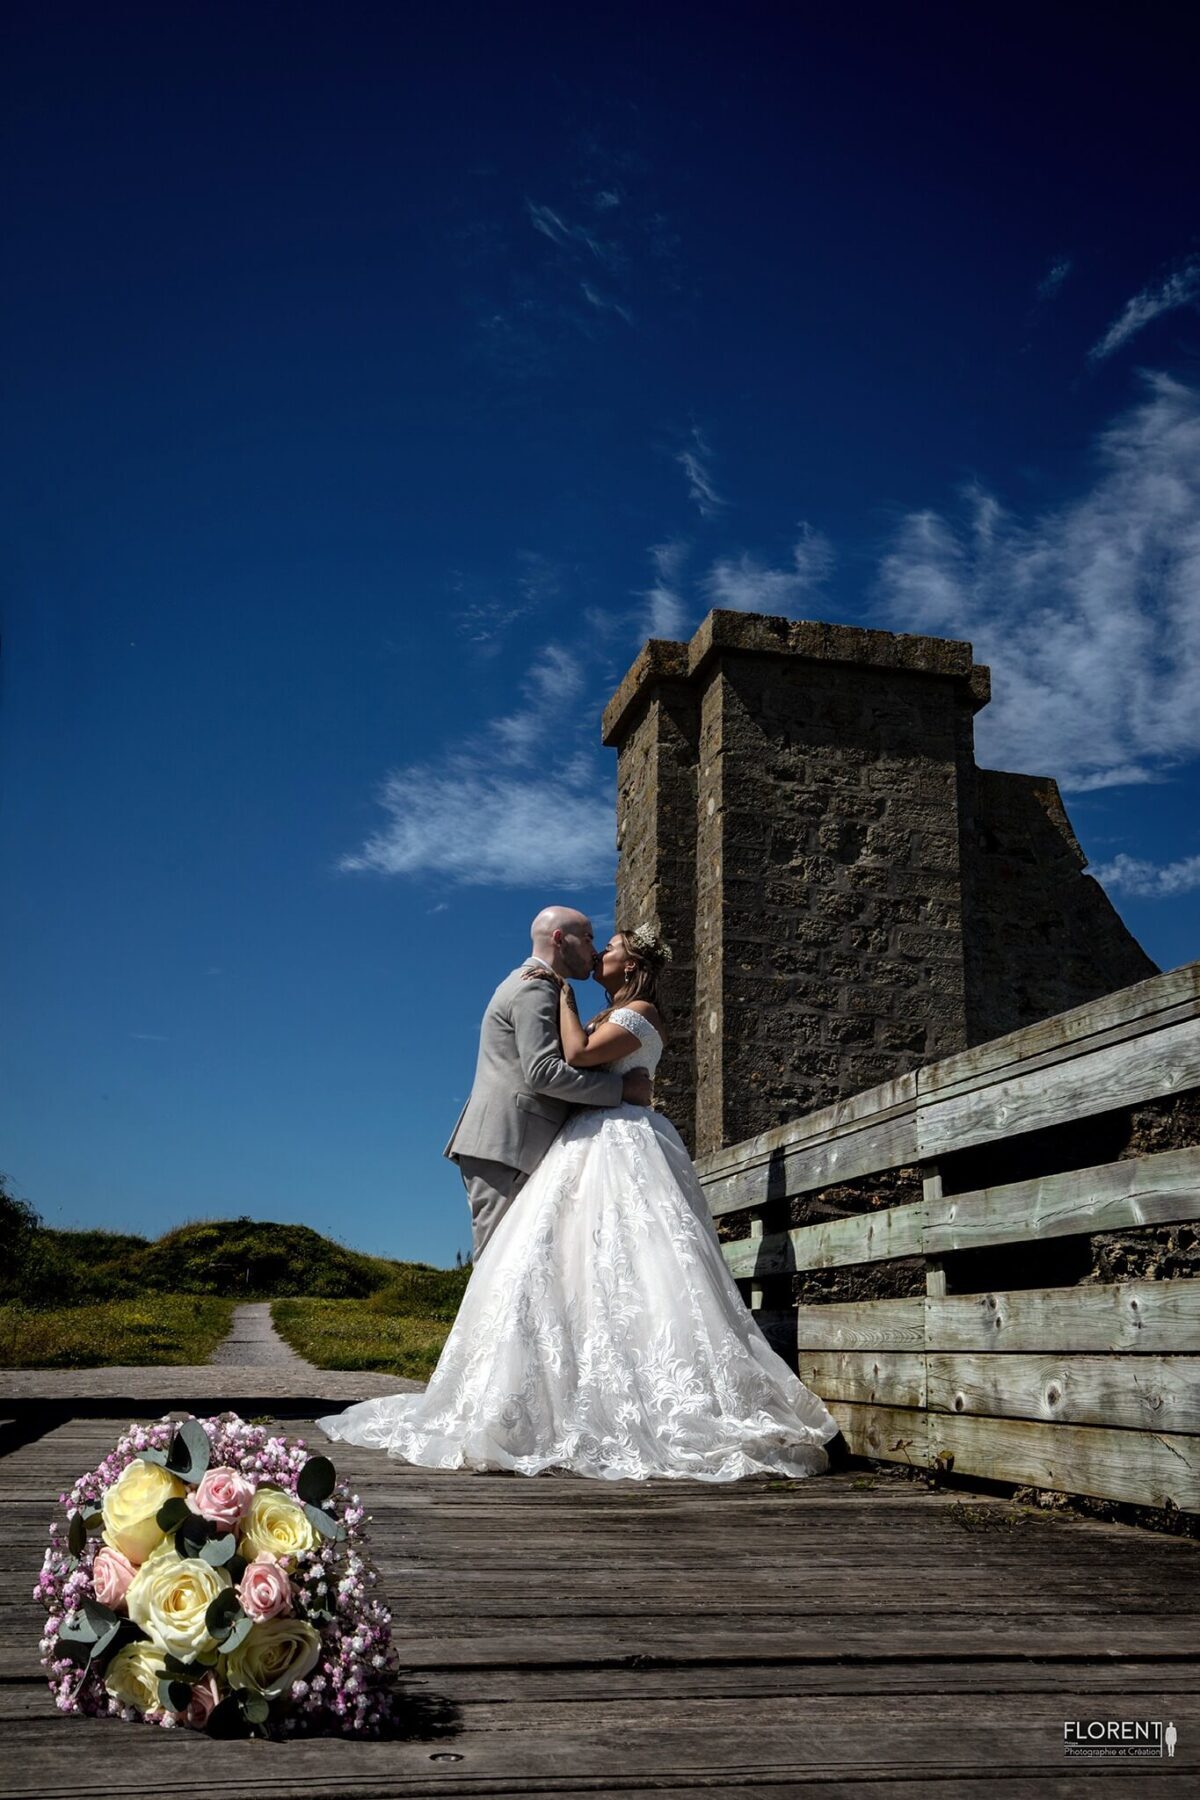 photographe mariage les mariés s'embrassent sur un pont paris florent studio boulogne sur mer lille le touquet calais amiens saint omer